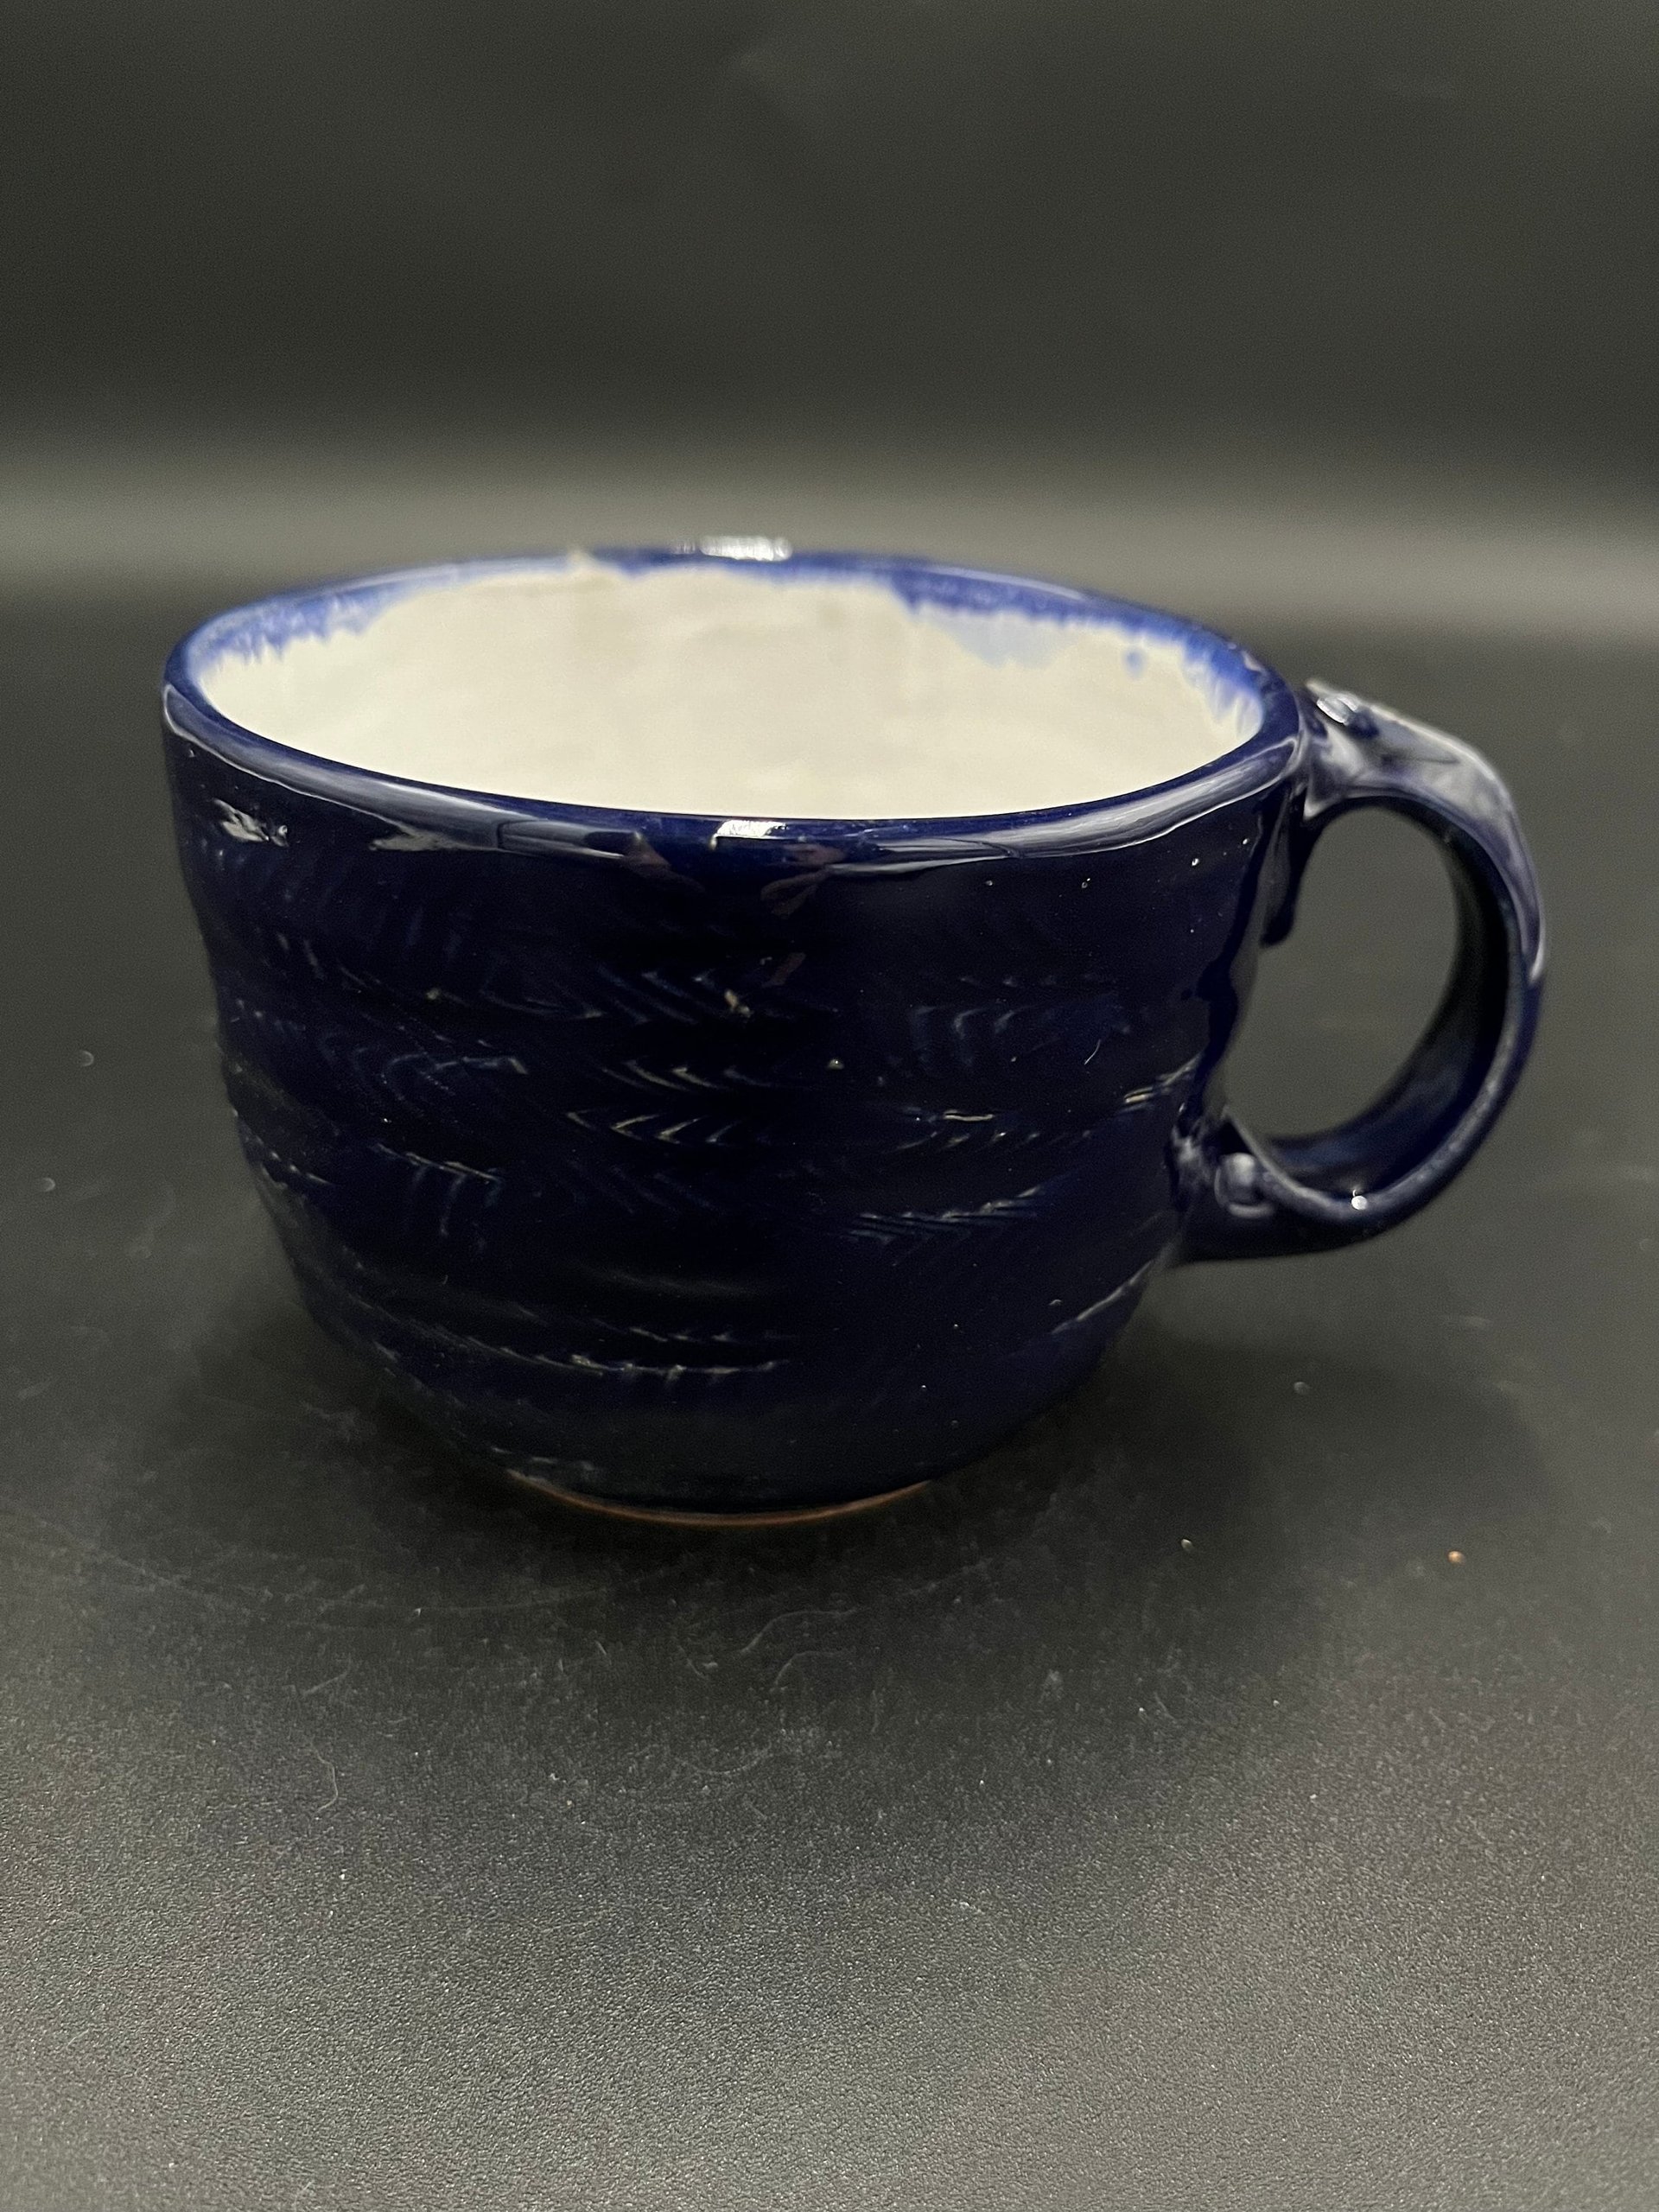 Handmade Carved Ceramic Cobalt Blue and White Mug